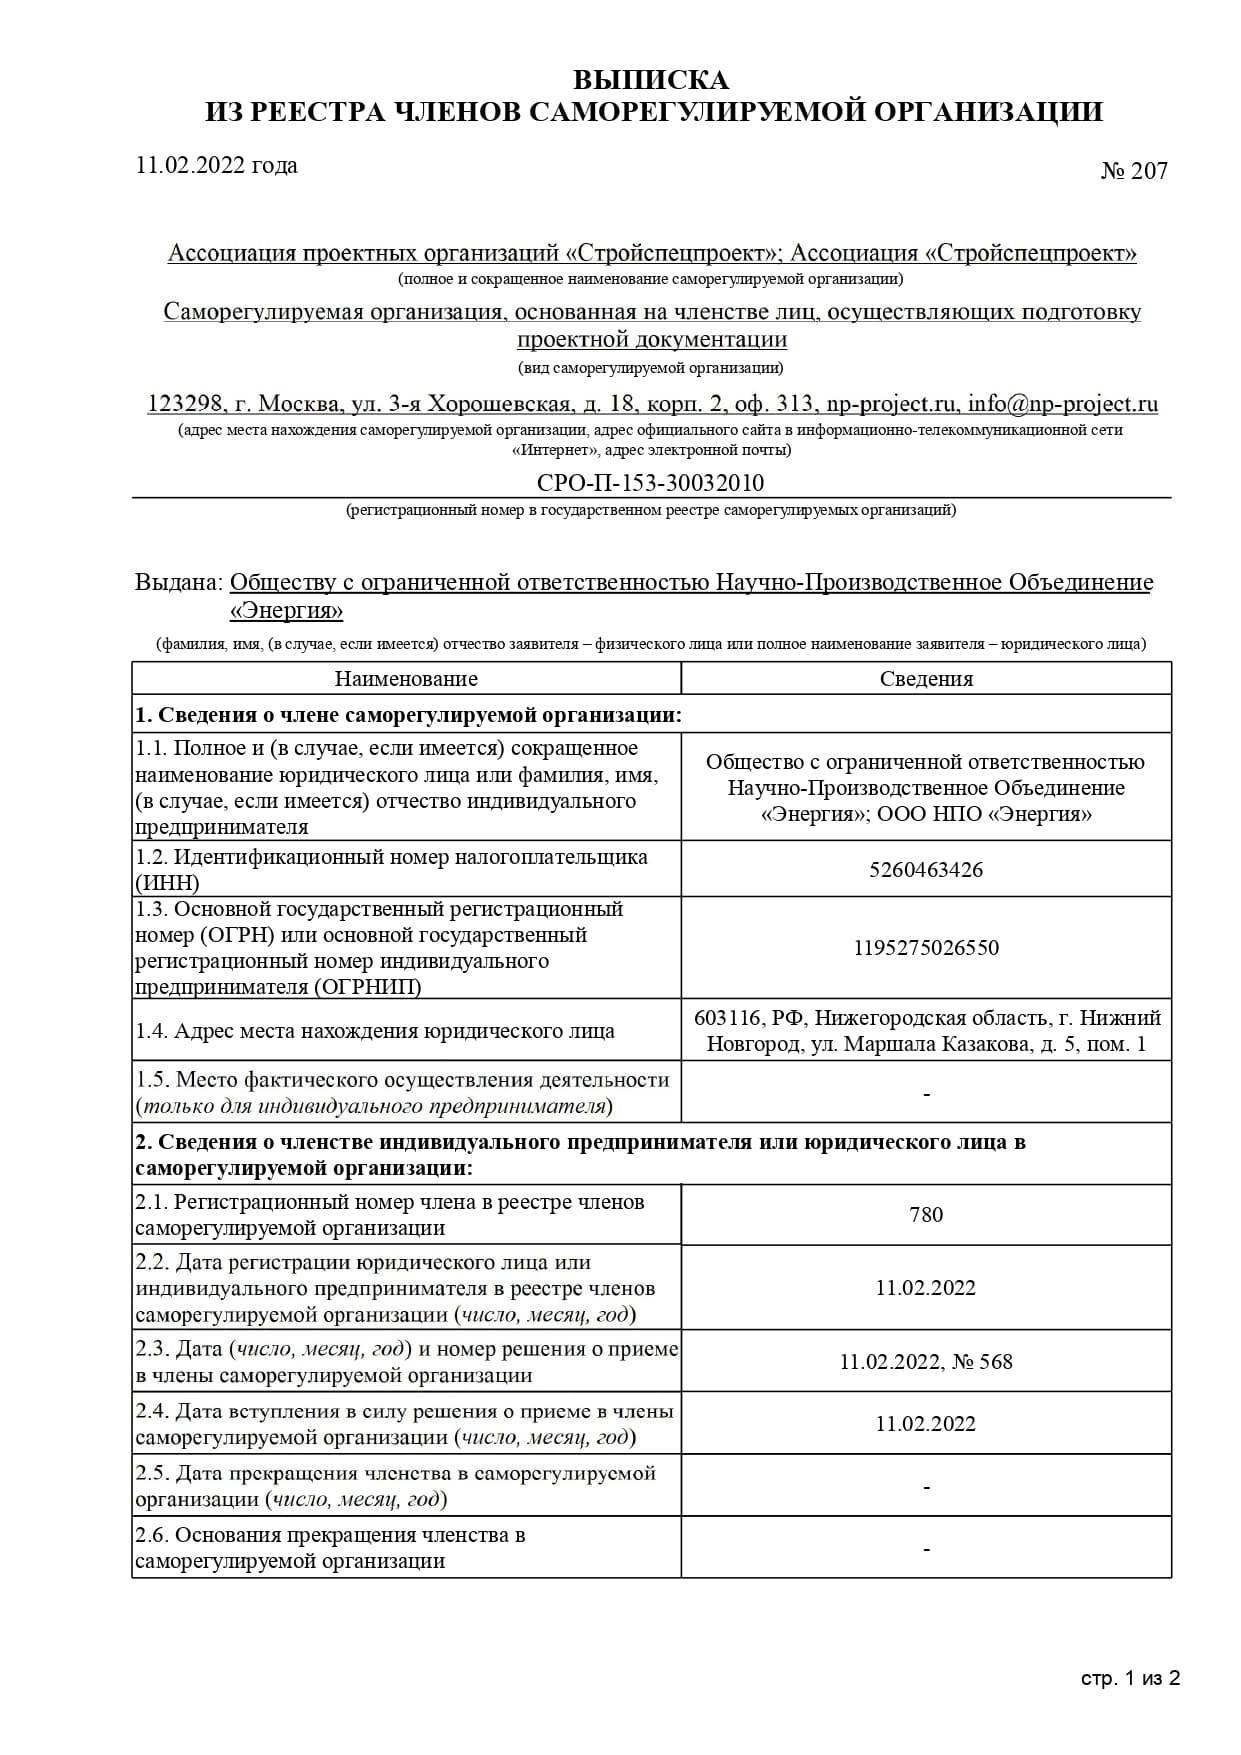 Выписка СРО 207 ООО НПО Энергия от 11.02.2022